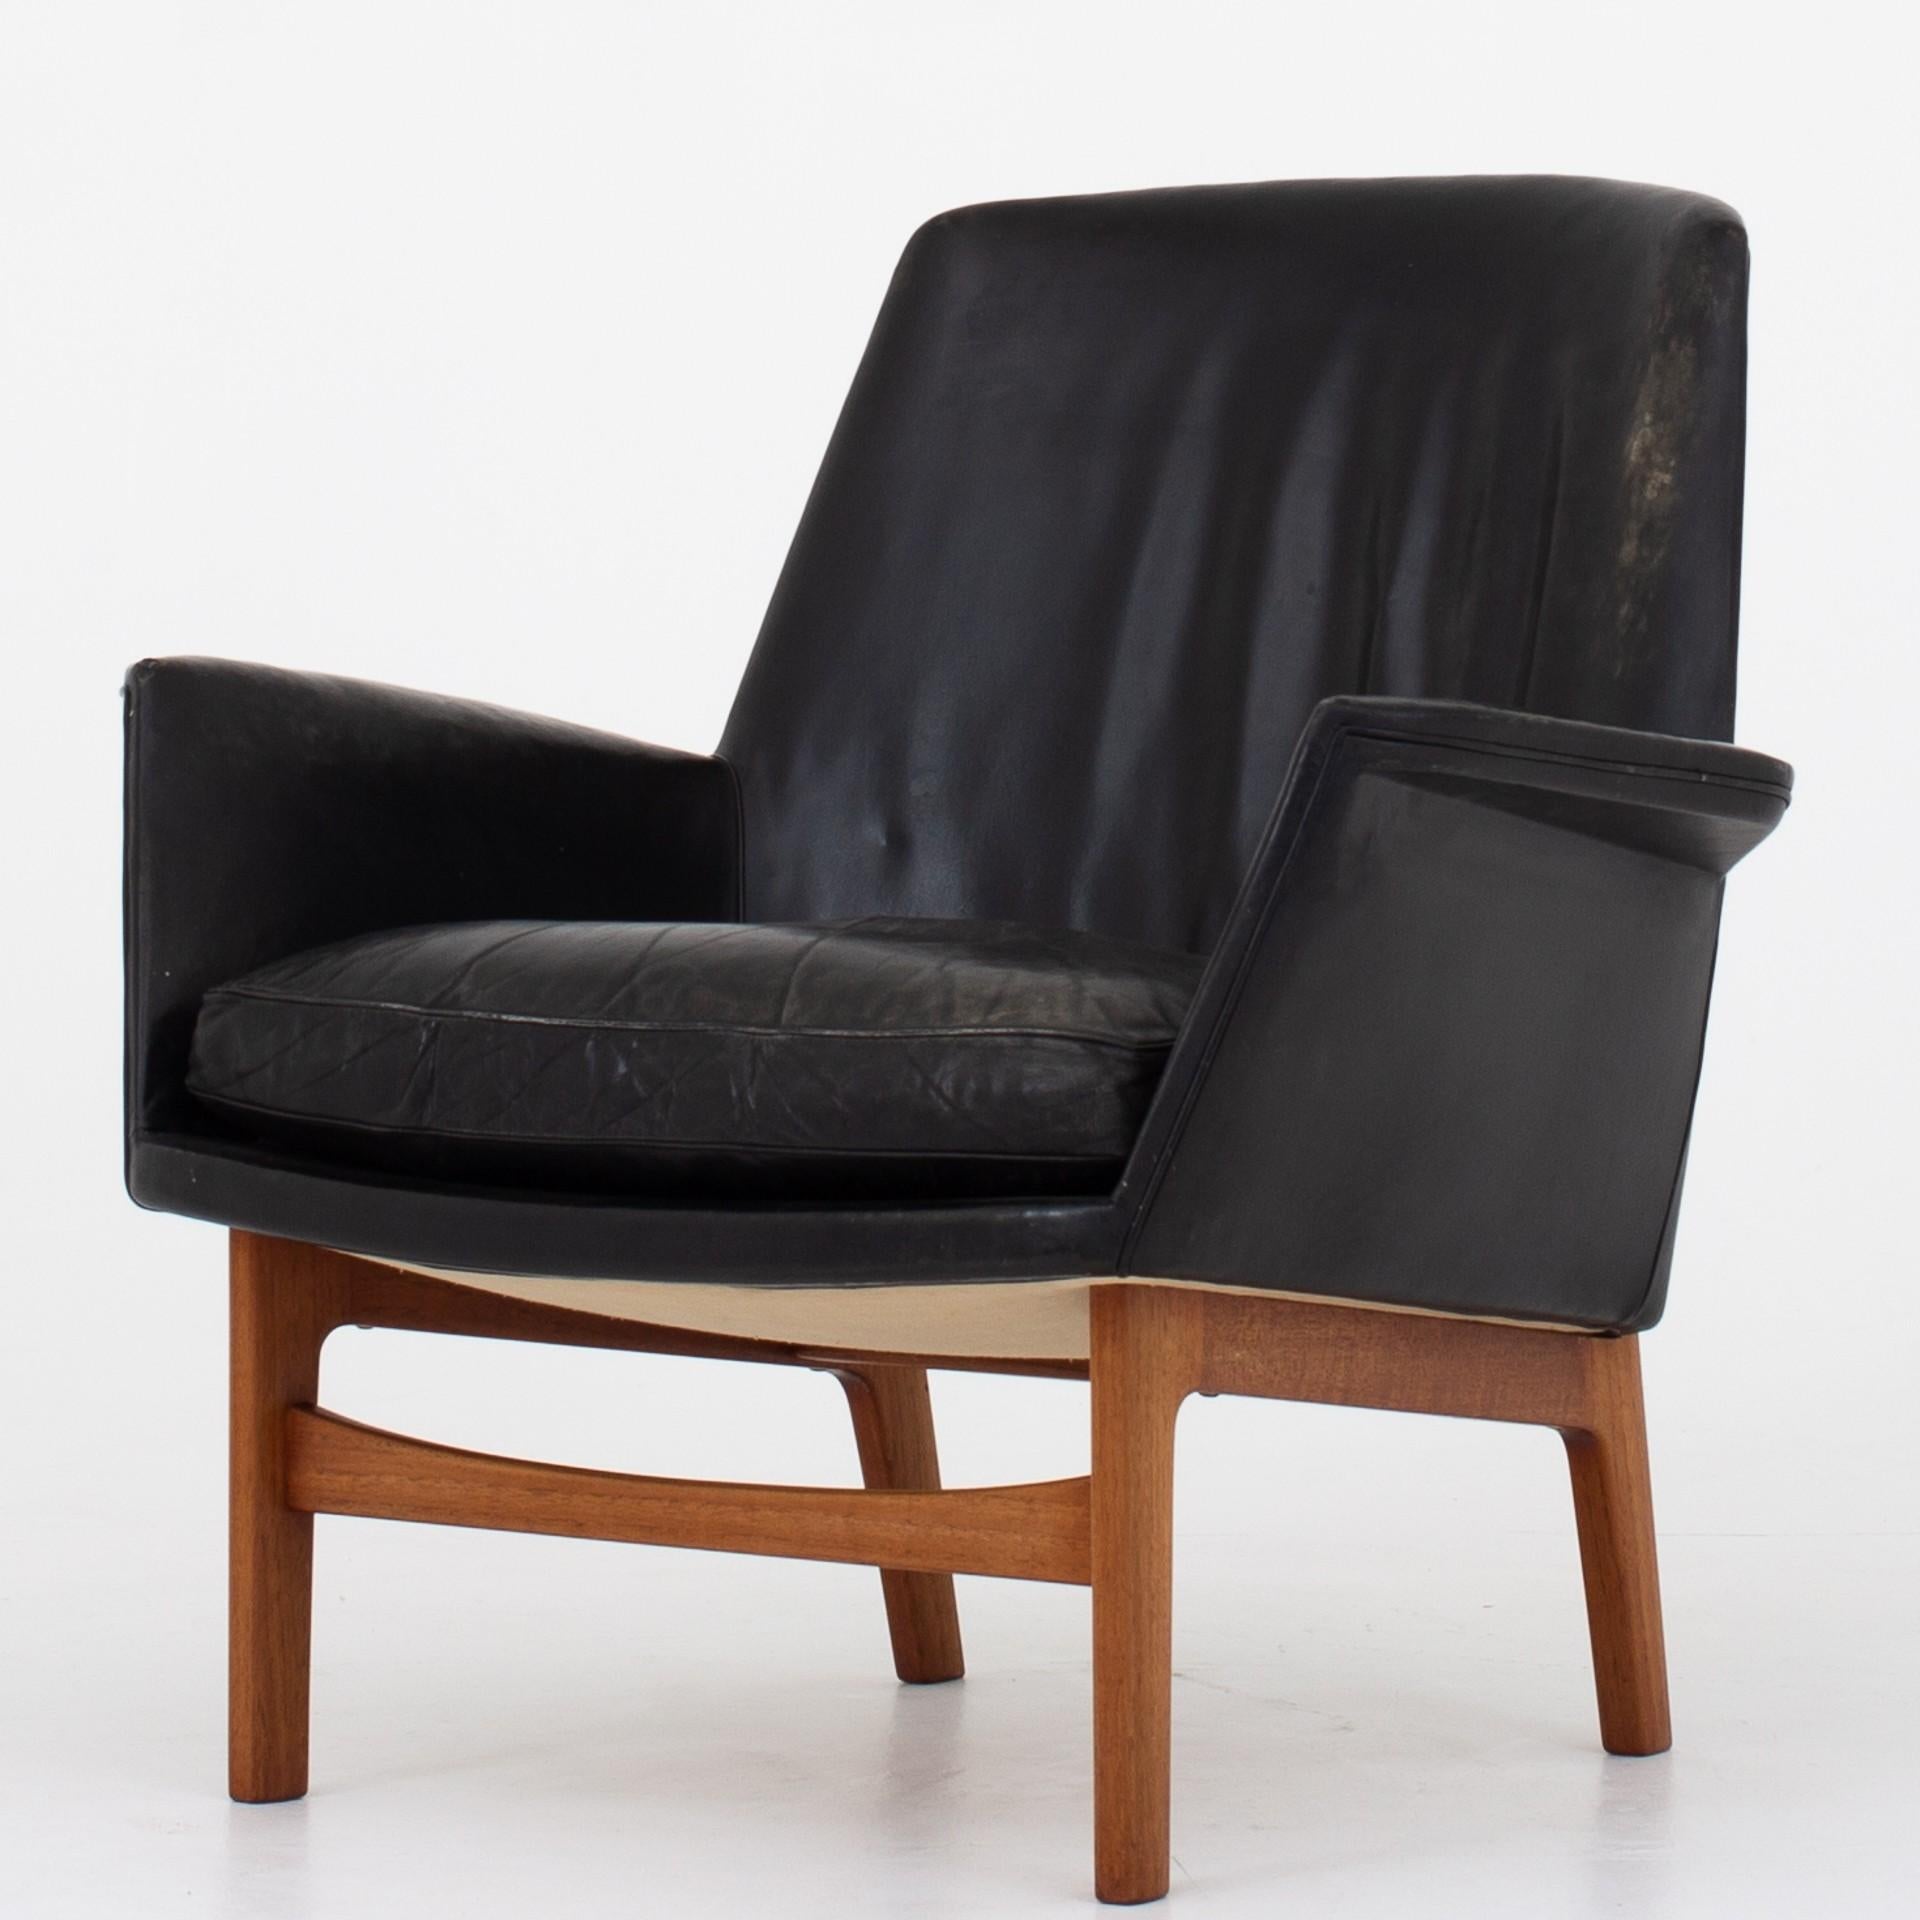 Set bestehend aus zwei Sesseln und Ottomane aus patiniertem schwarzem Leder und Teakholzrahmen. Seltener Satz. Schöpfer Thorald Madsen, 1950.